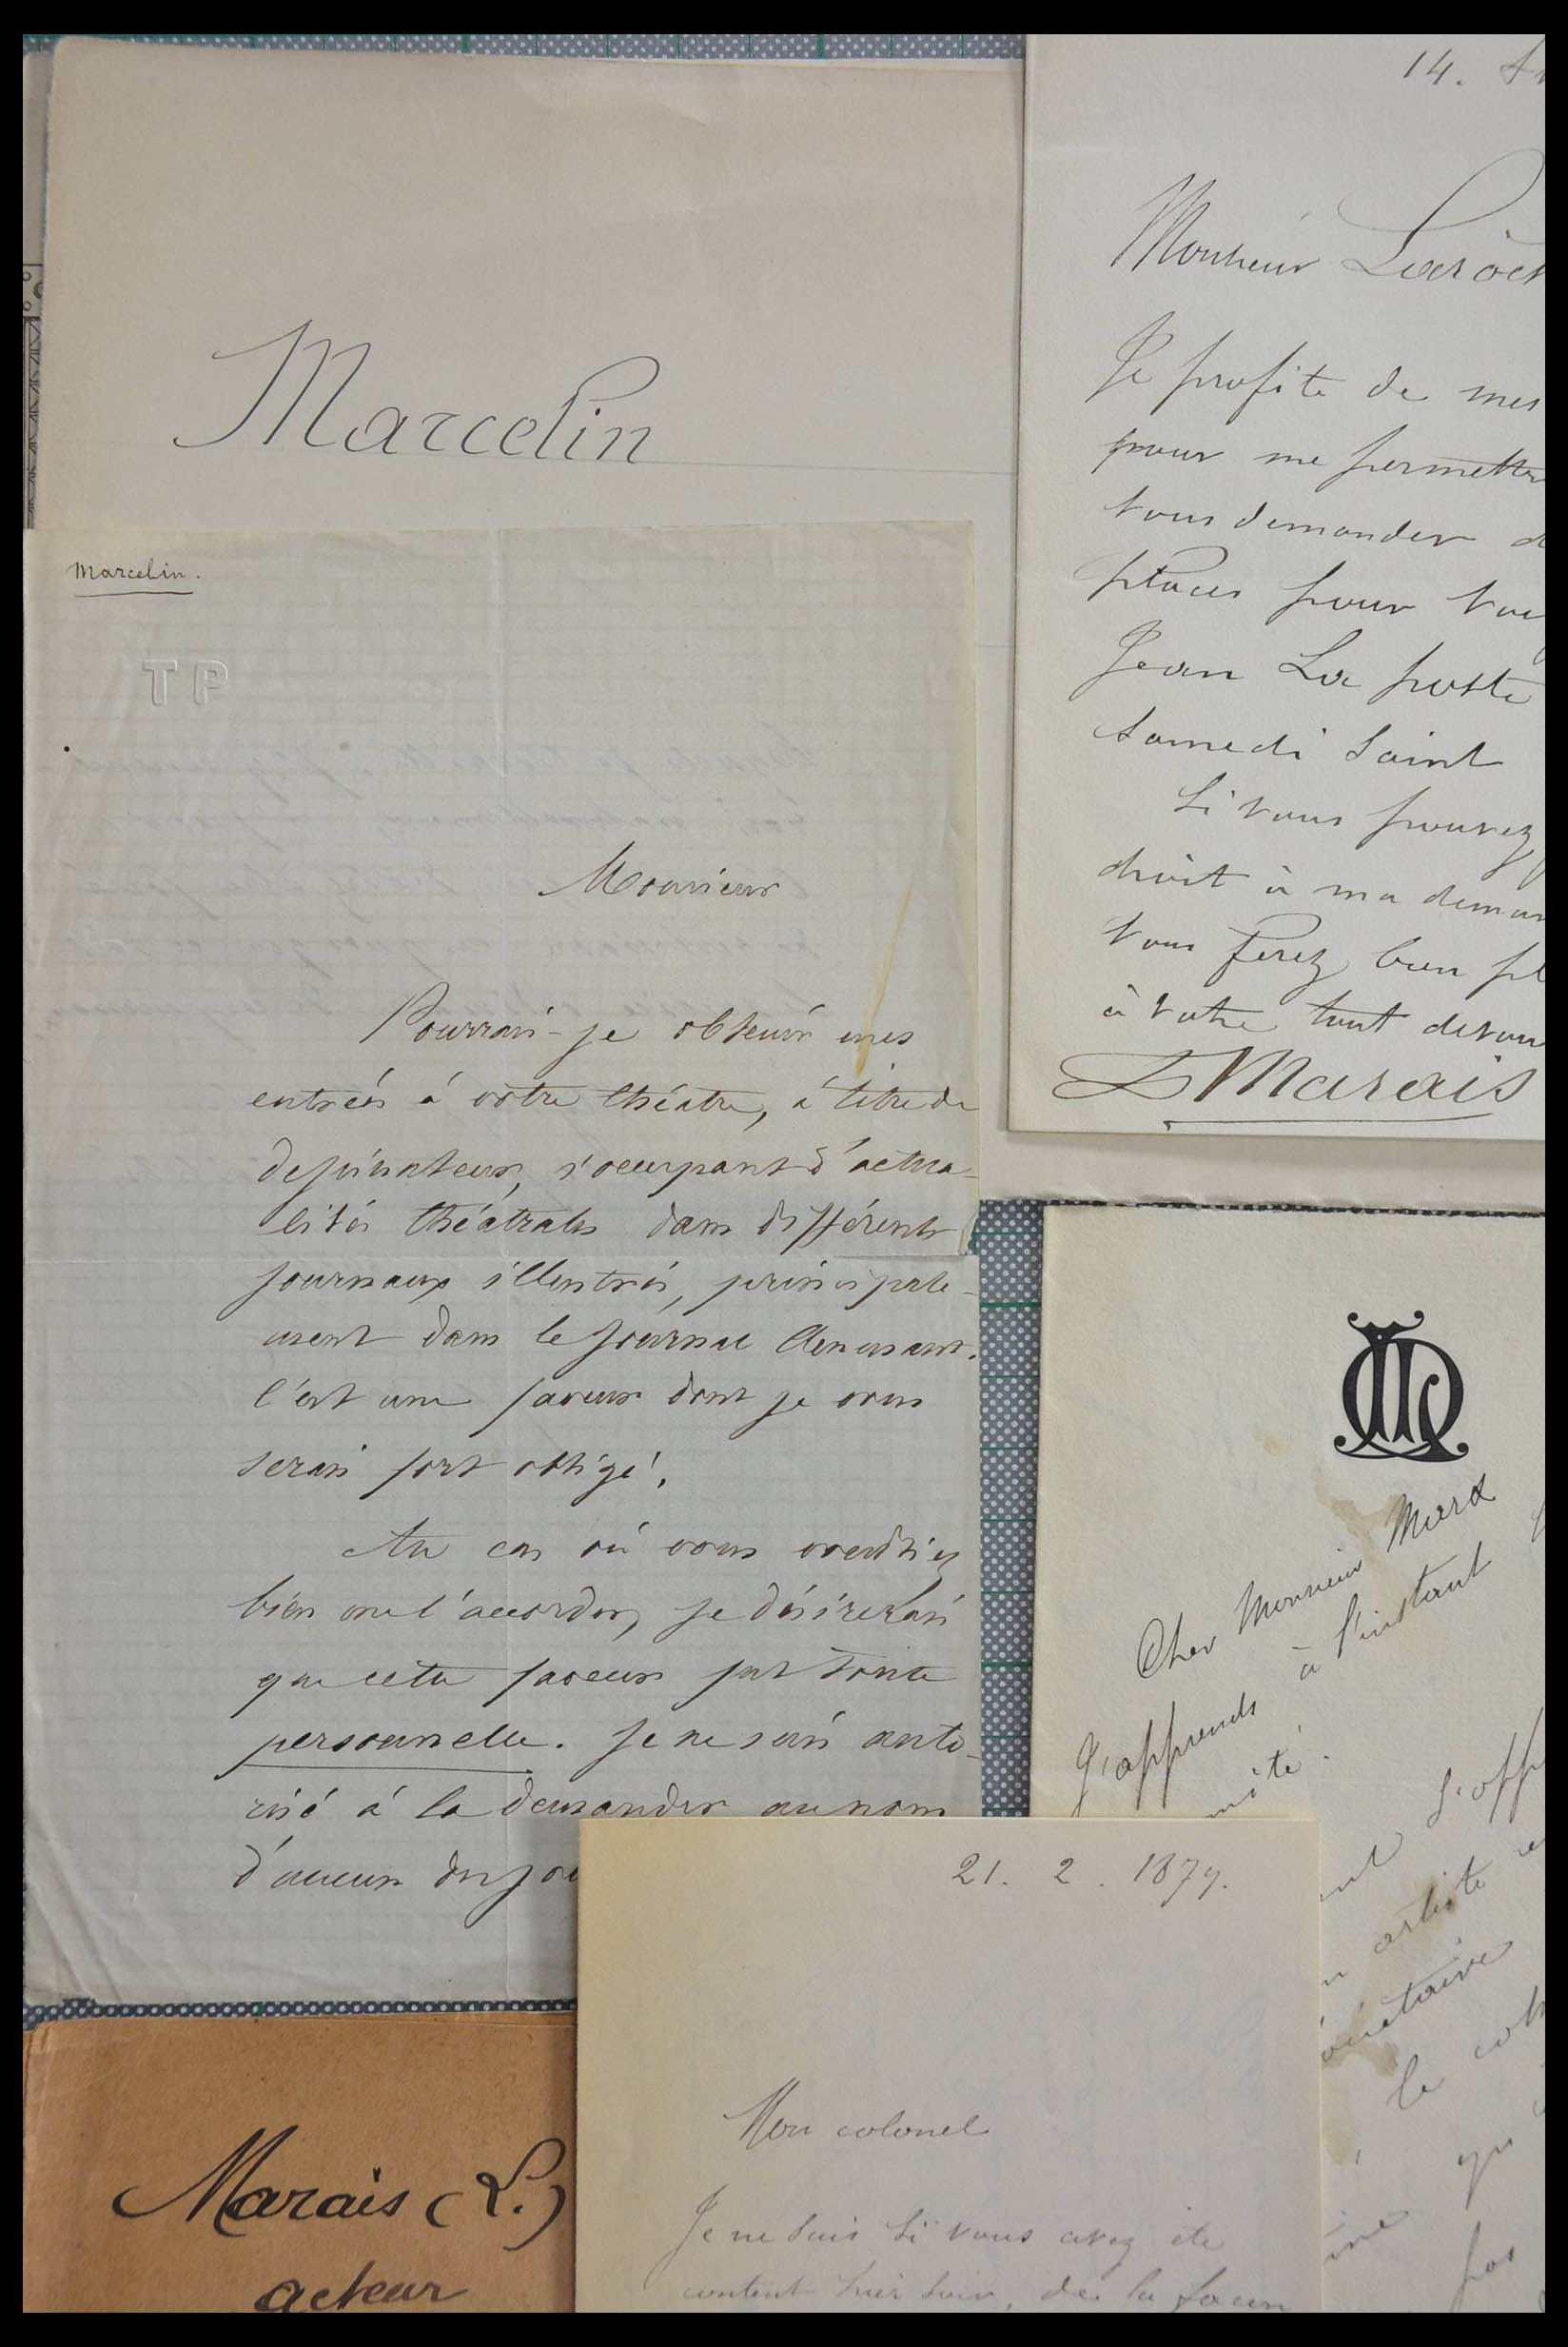 28357 1054 - 28357 Frankrijk handtekeningen 19e/20e eeuw.